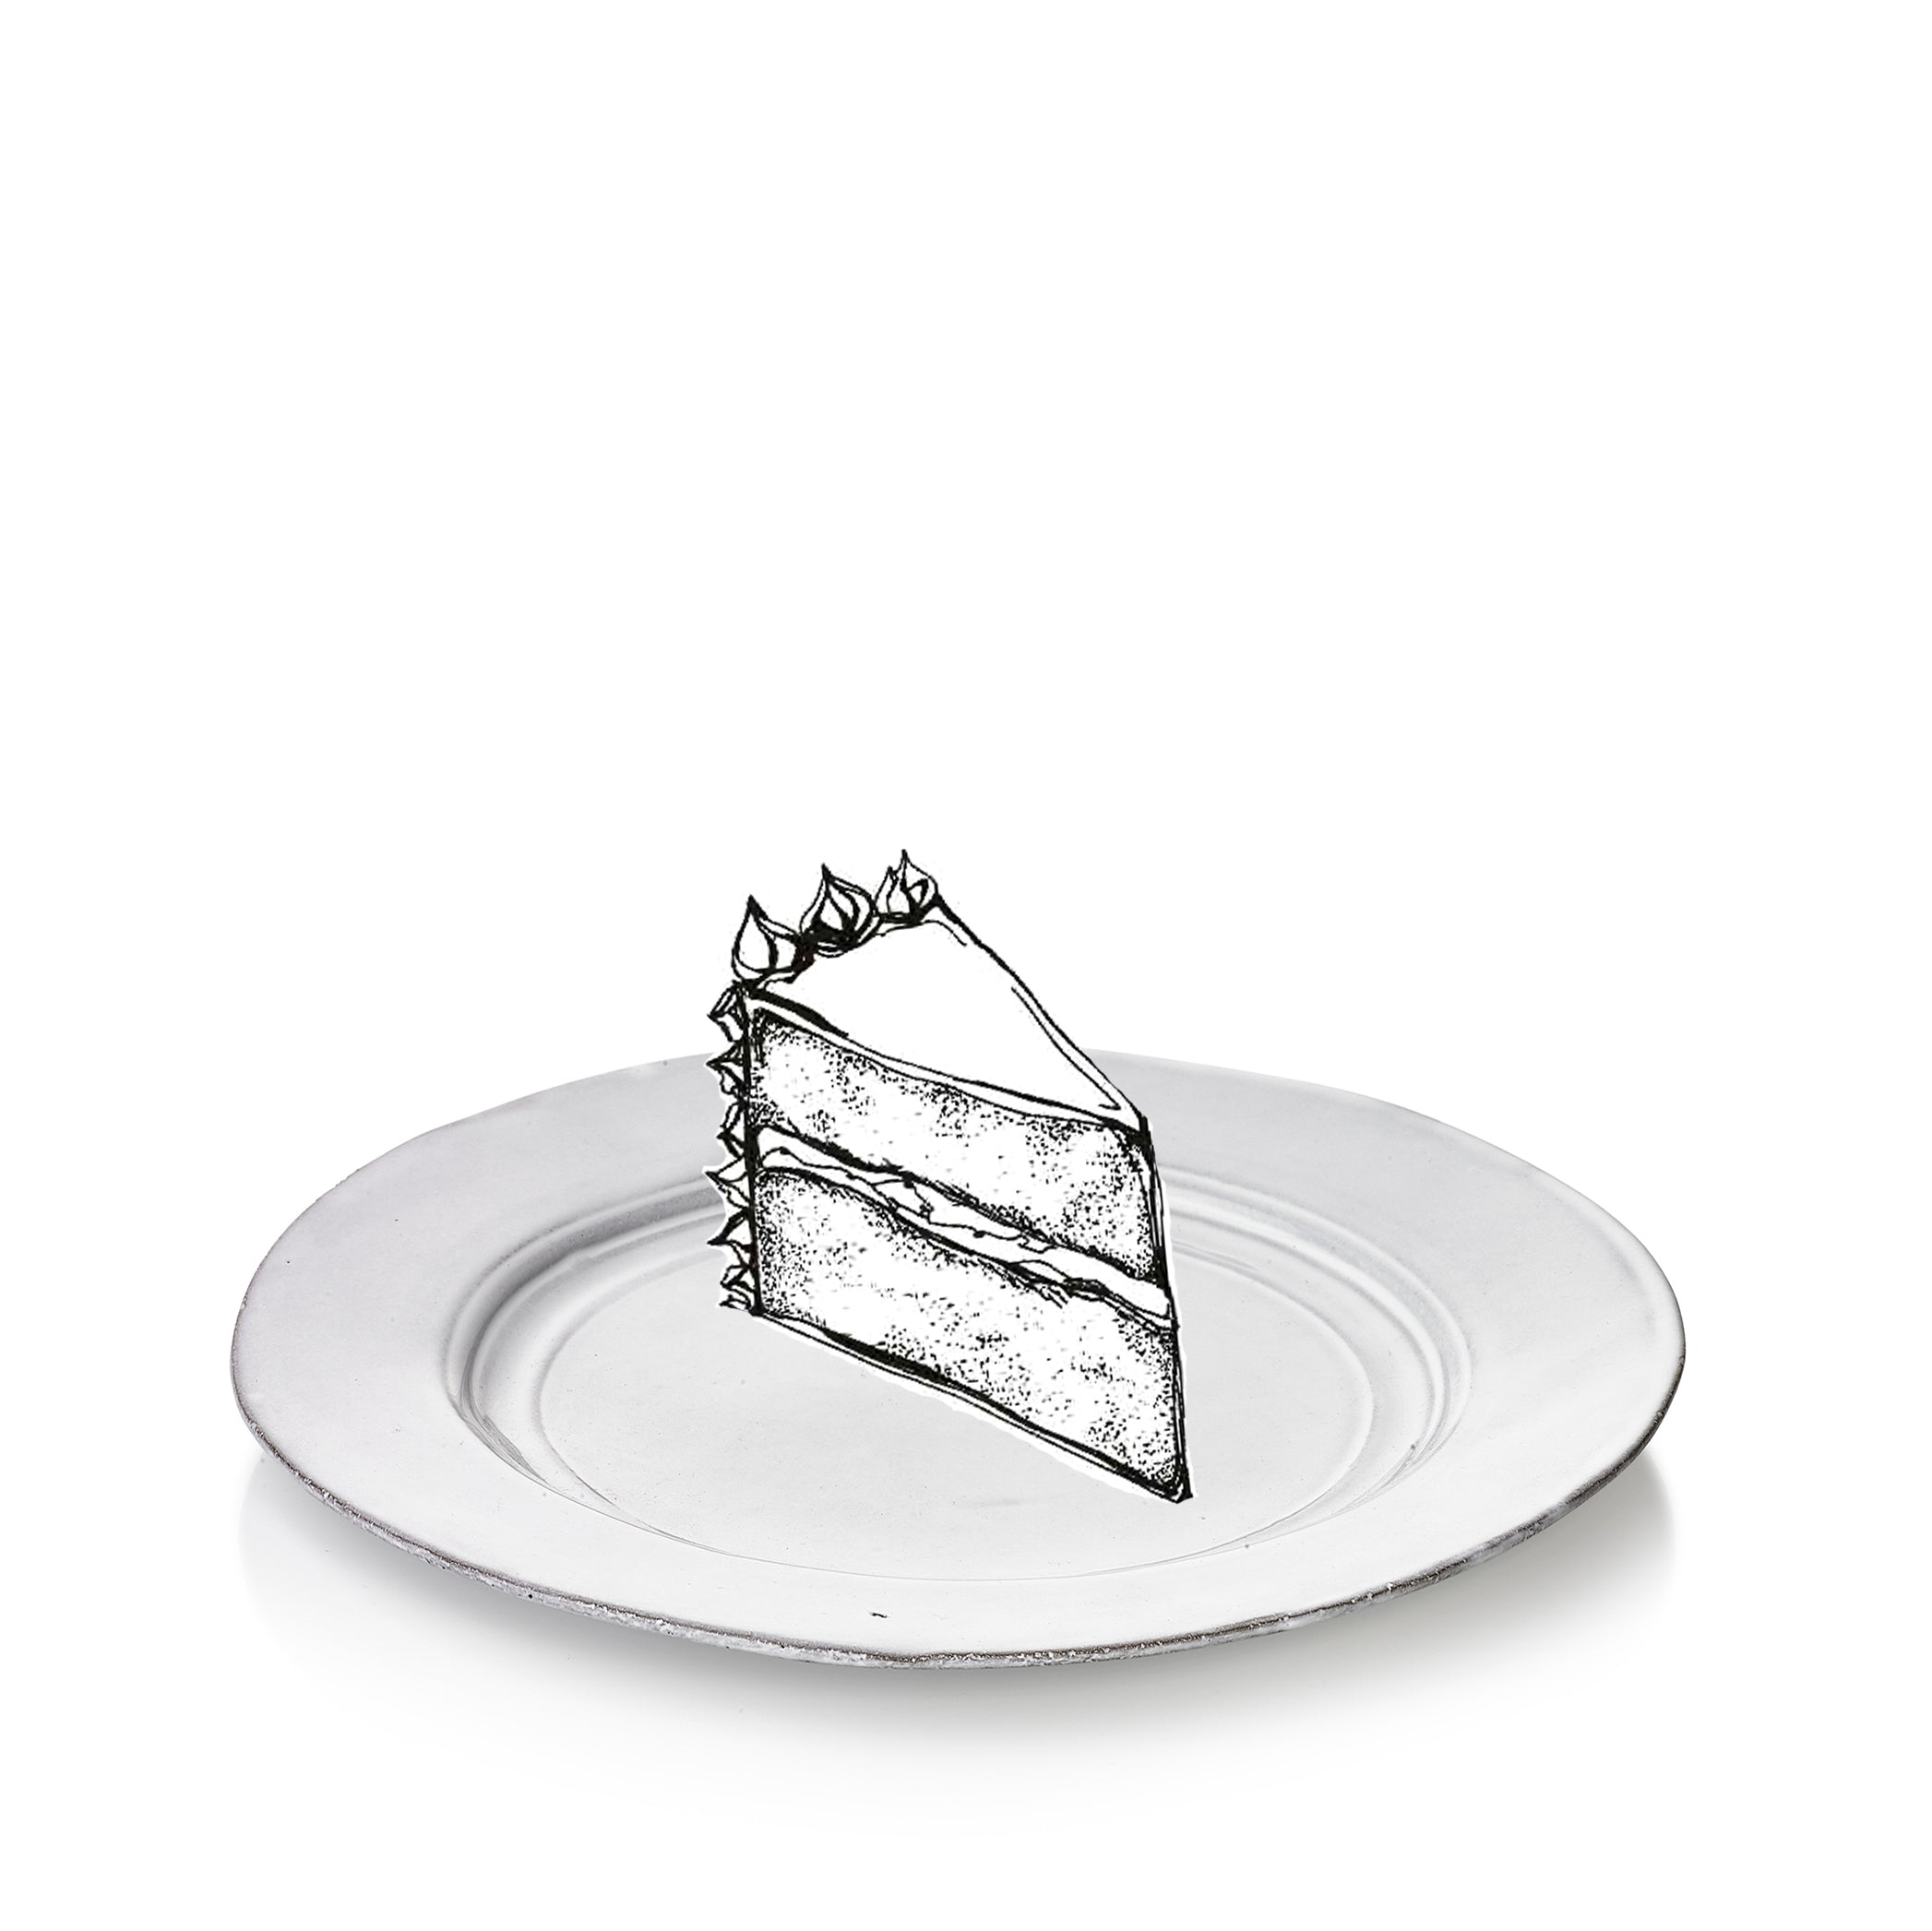 Grand Chalet Dinner Plate by Astier de Villatte, 27cm